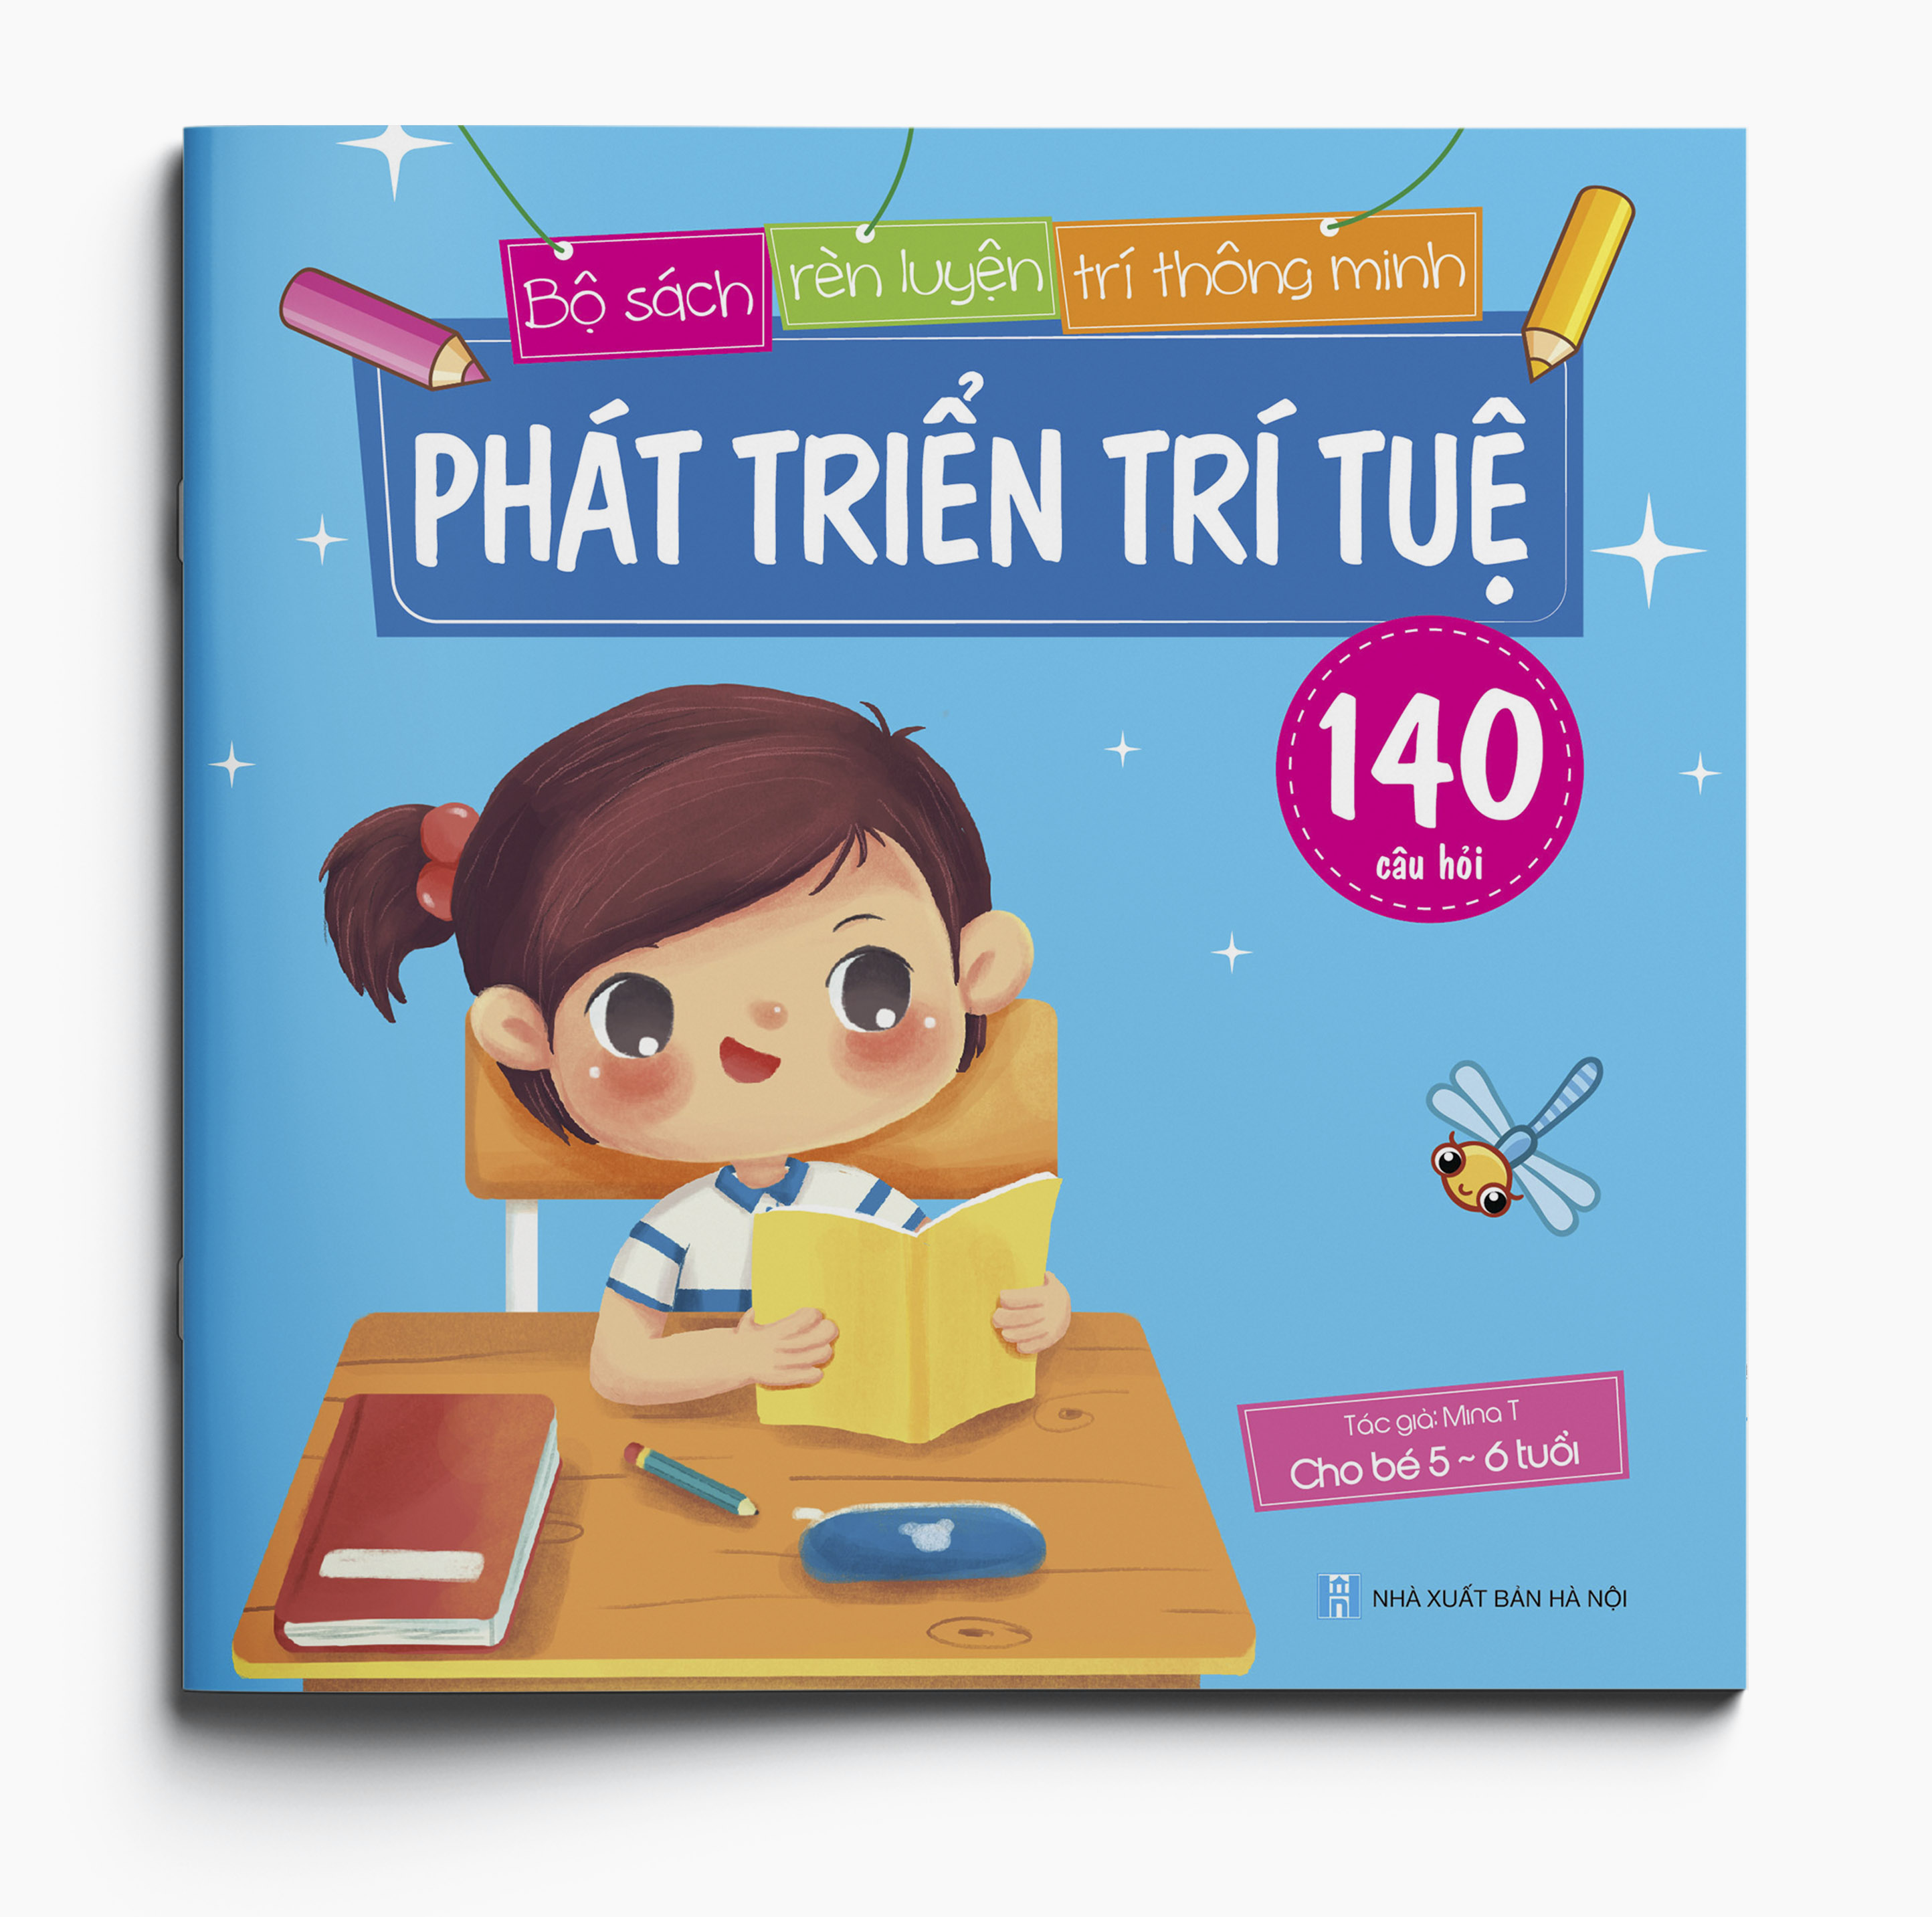 Phát triển trí tuệ (140 câu đố) - Bộ sách Rèn luyện Trí thông minh - Dành cho trẻ 5-6 tuổi